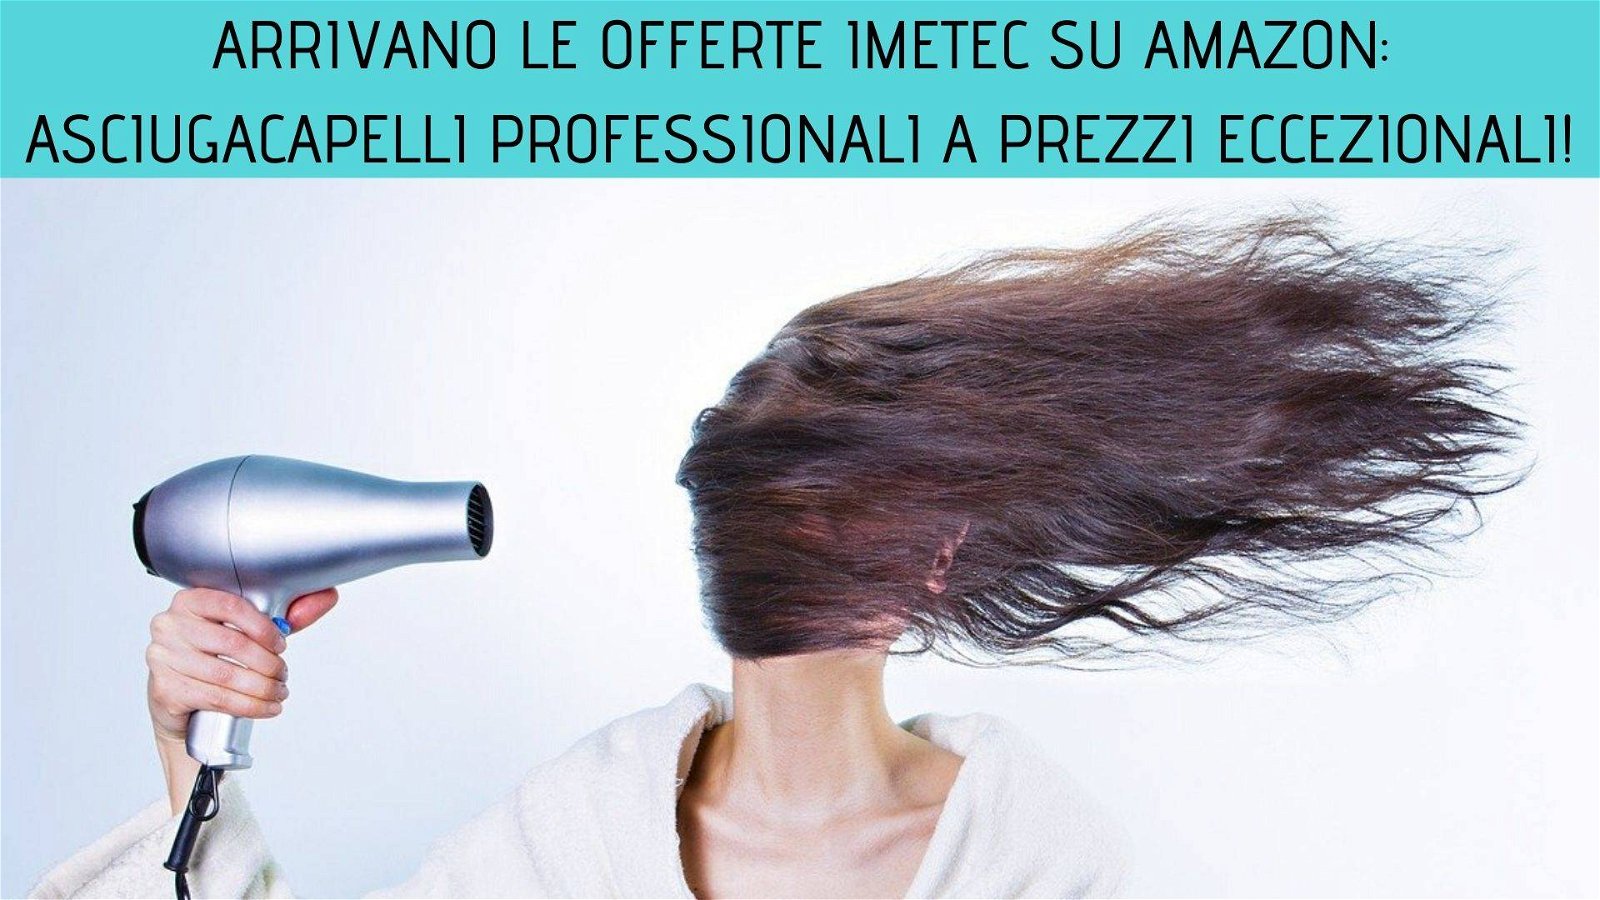 Immagine di Arrivano le offerte Imetec: asciugacapelli professionali a prezzi eccezionali!